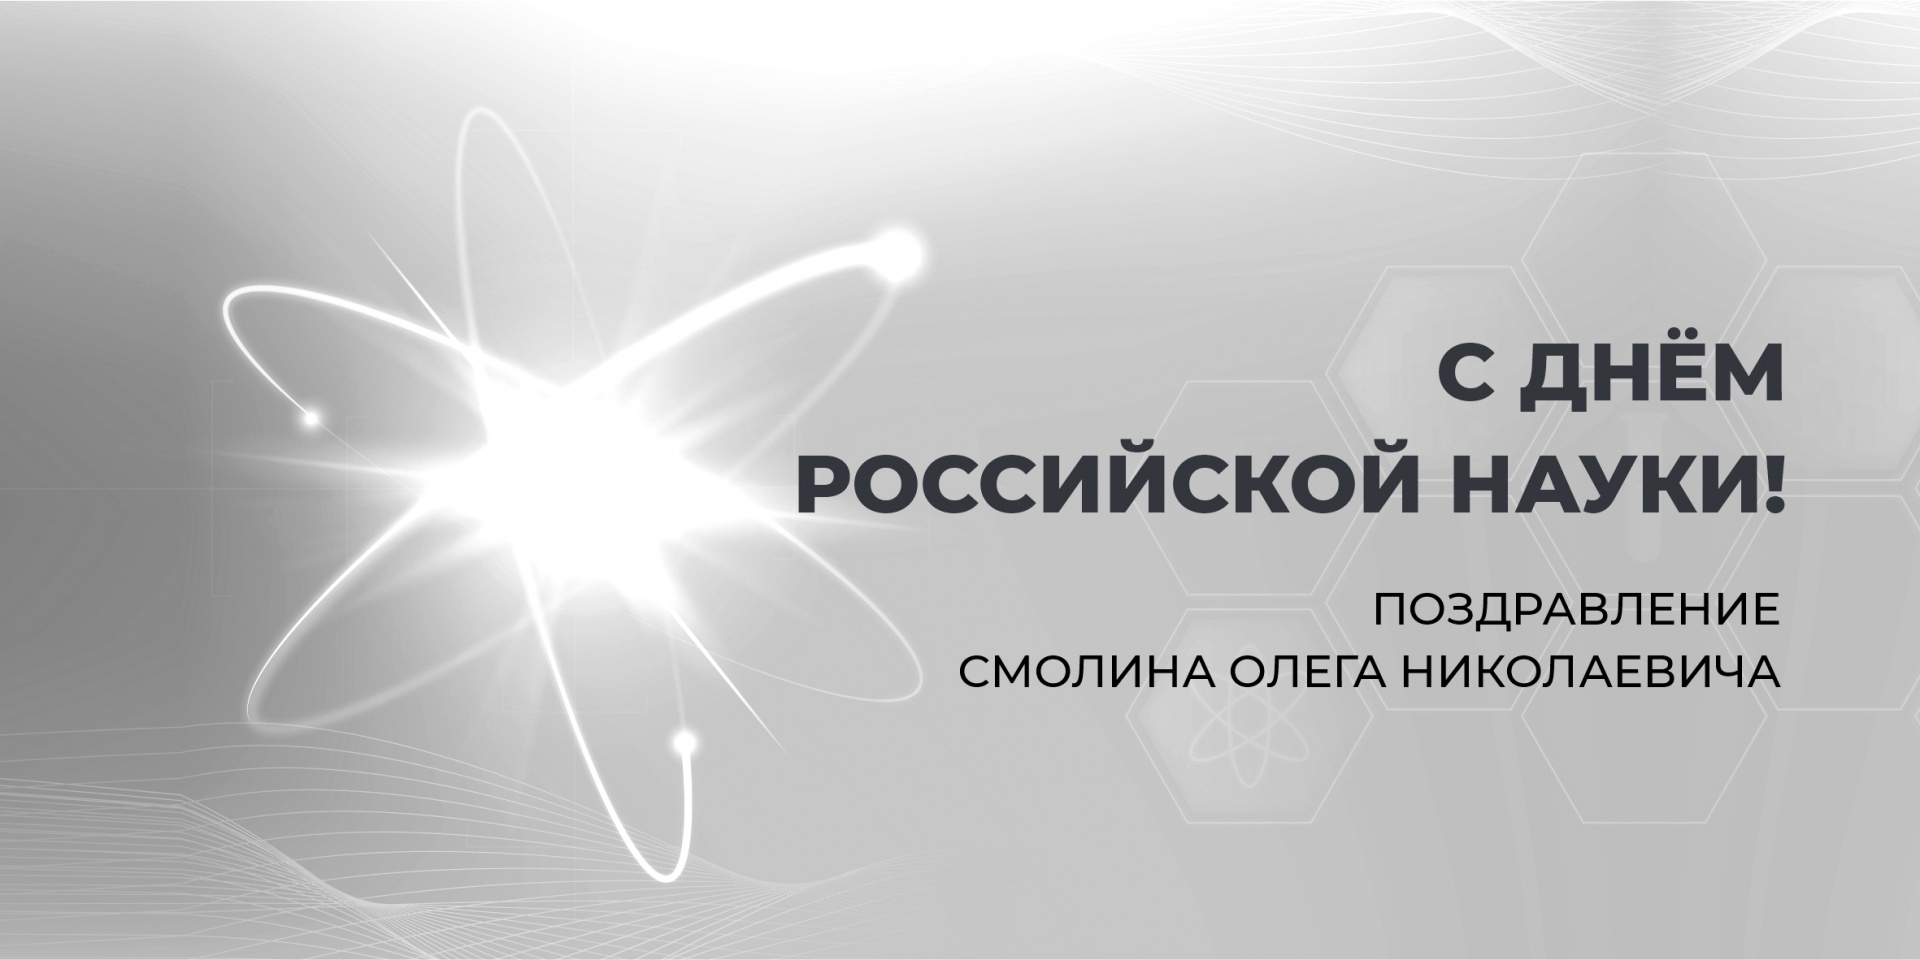 Поздравление с Днём российской науки от О.Н Смолина